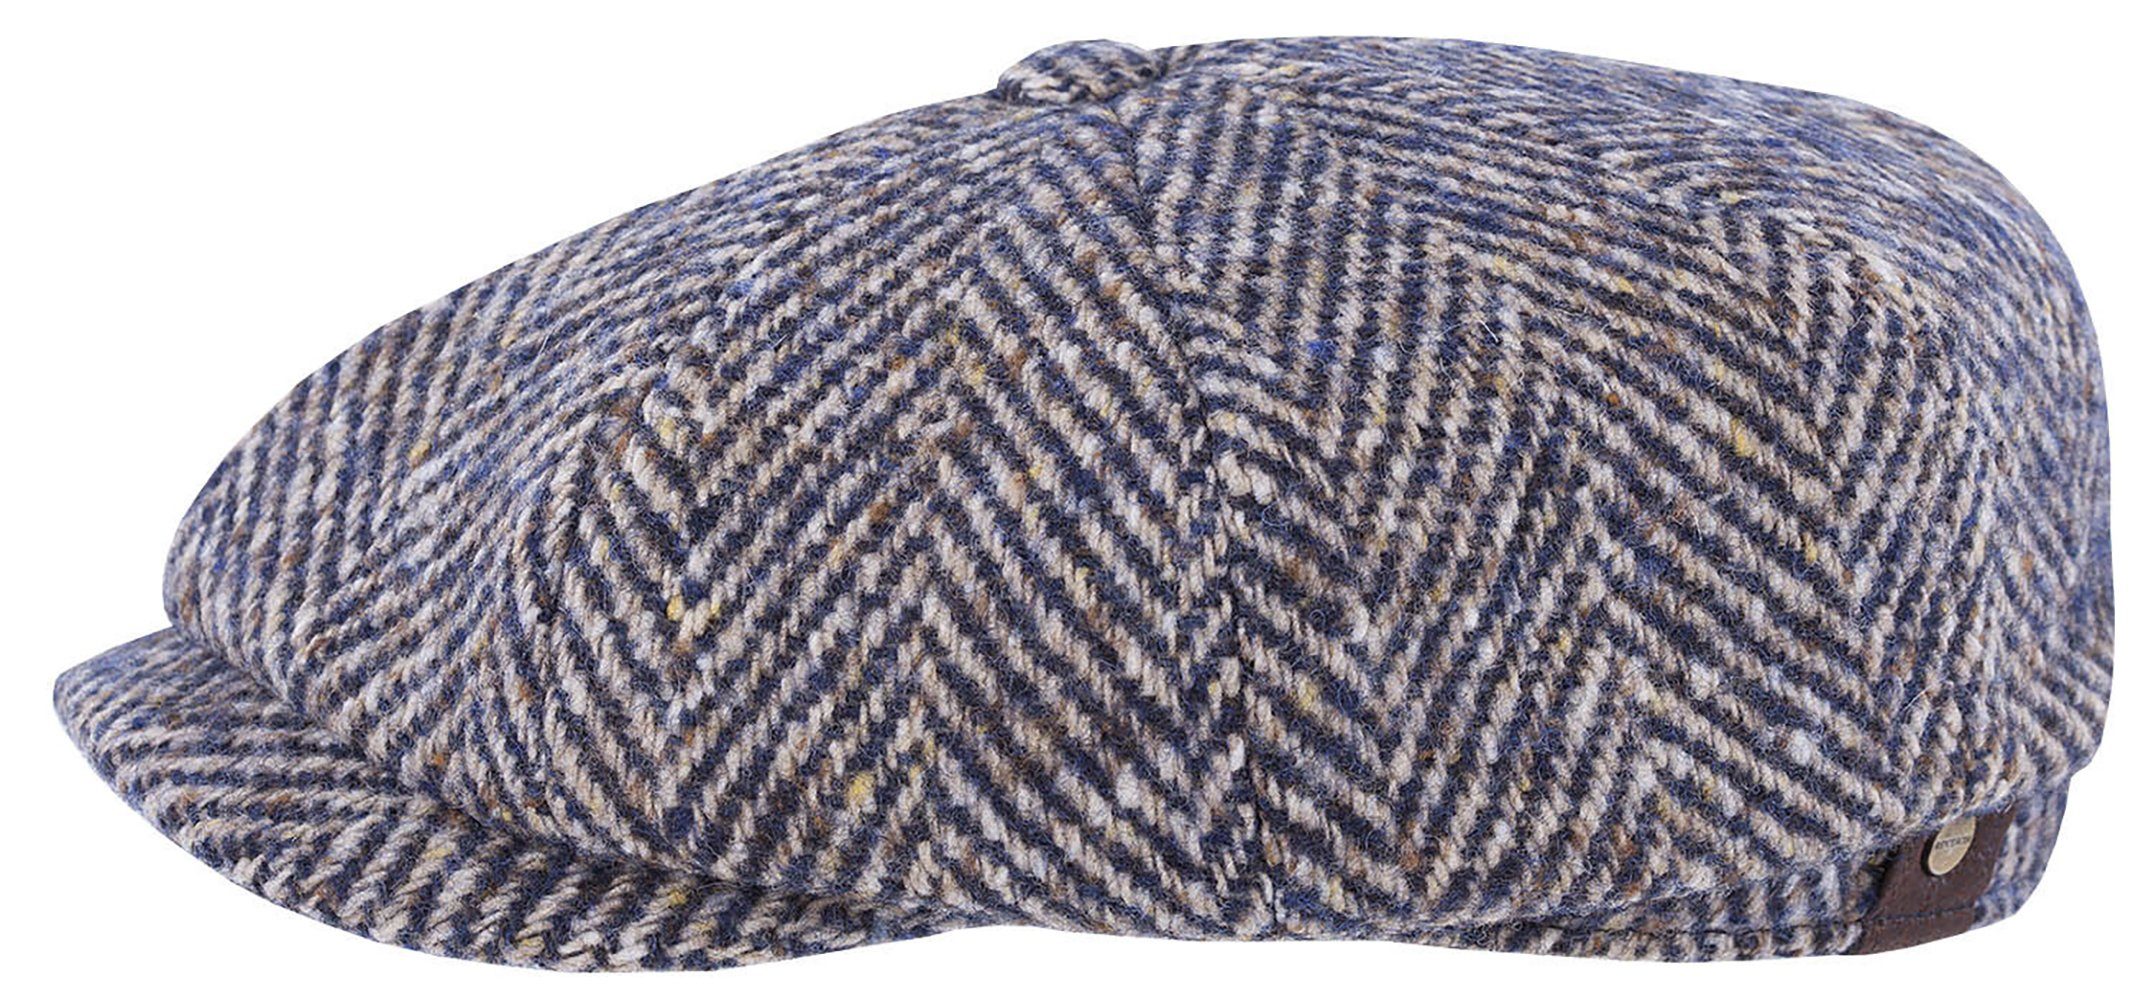 Stetson Flat Cap Wool Schurwolle 327 Hatteras Herringbone Virgin aus